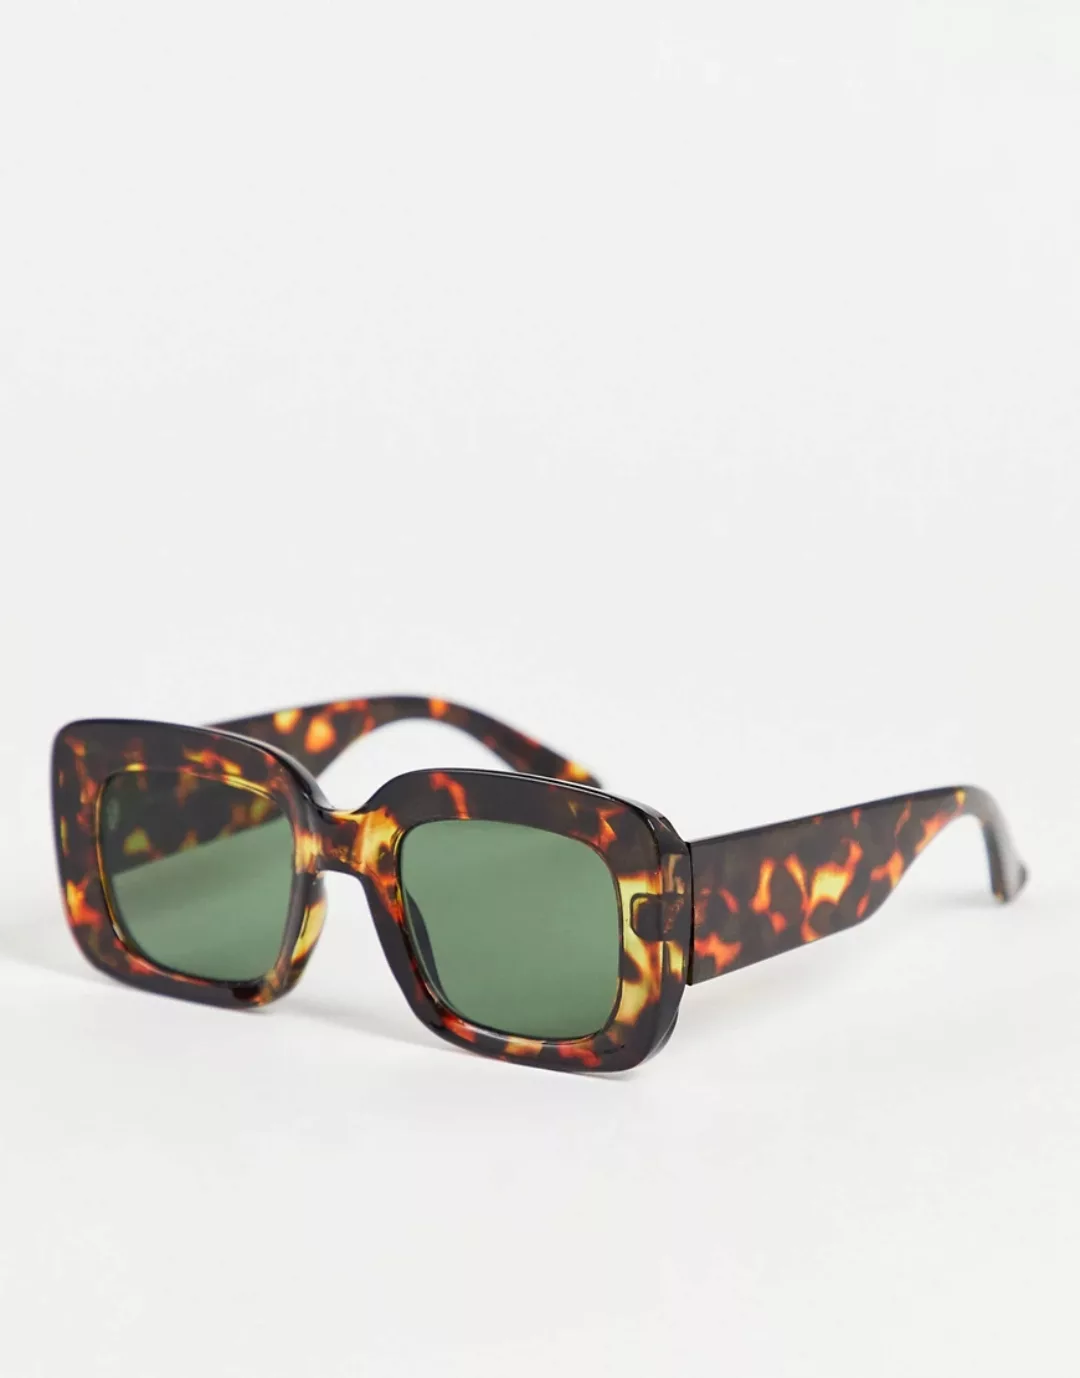 New Look – Eckige Oversize-Sonnenbrille in brauner Schildpattoptik günstig online kaufen